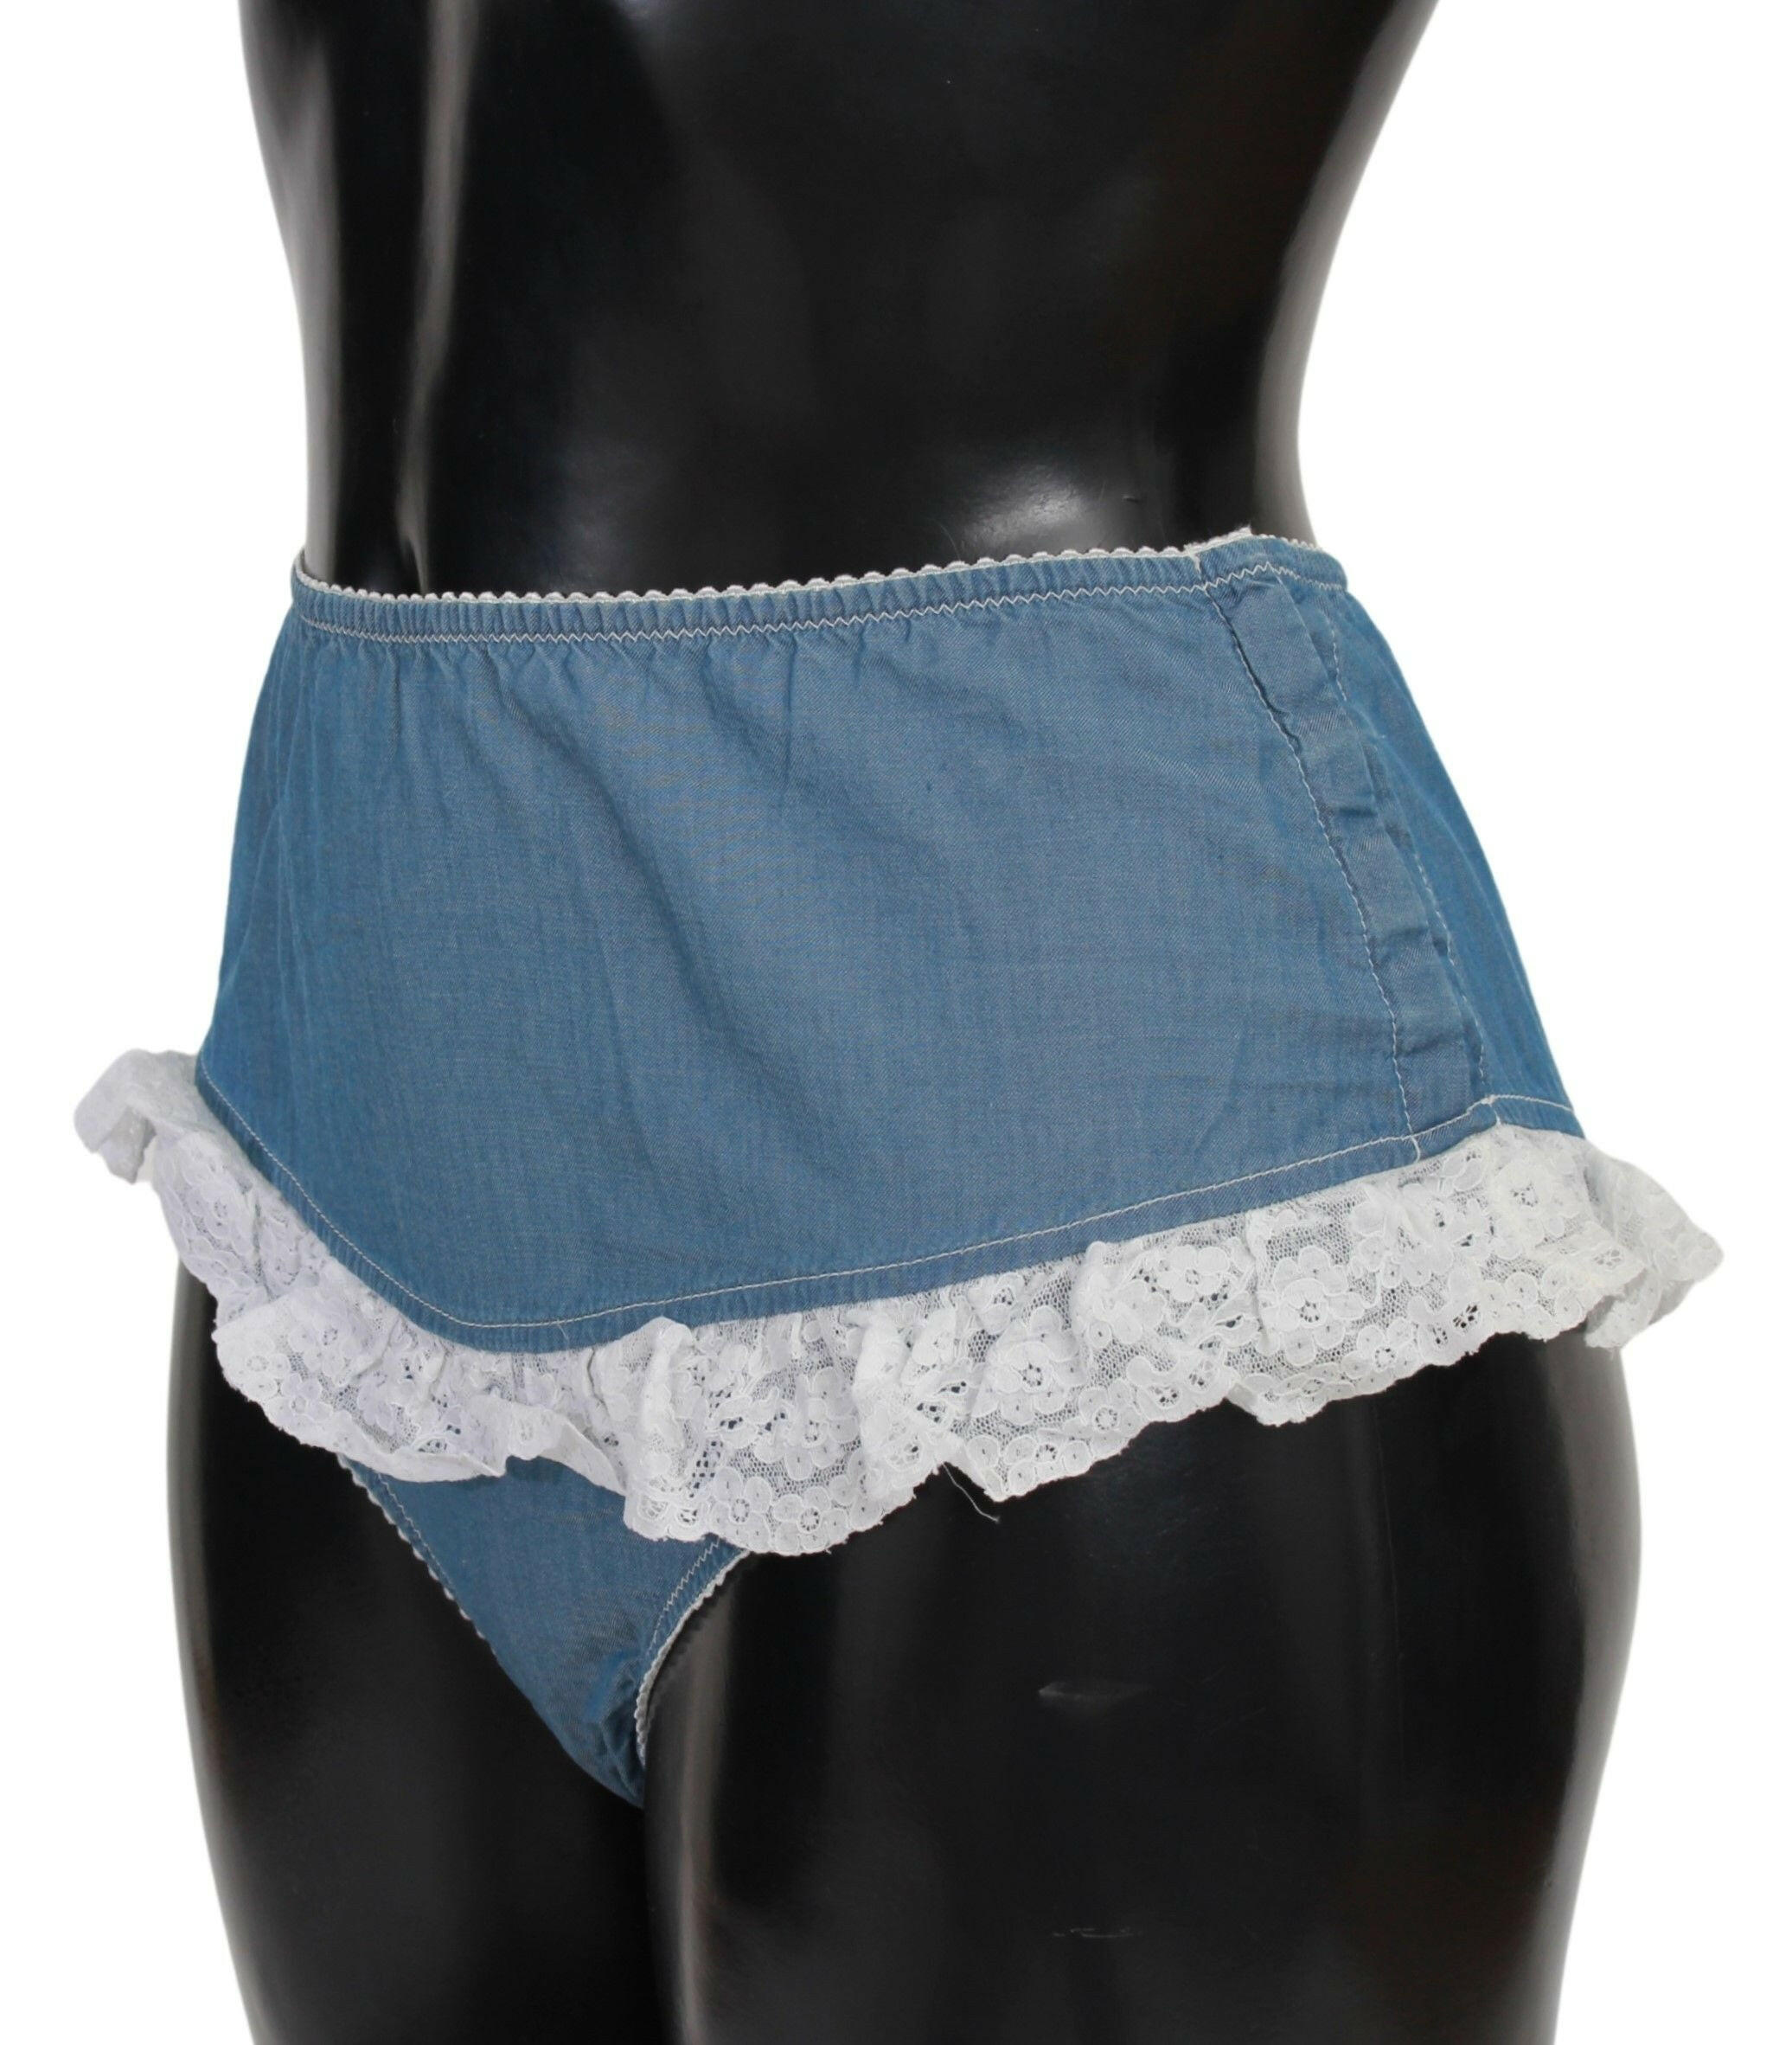 Ermanno Scervino Blue Cotton Lace Slip Denim Bottom Underwear - GENUINE AUTHENTIC BRAND LLC  